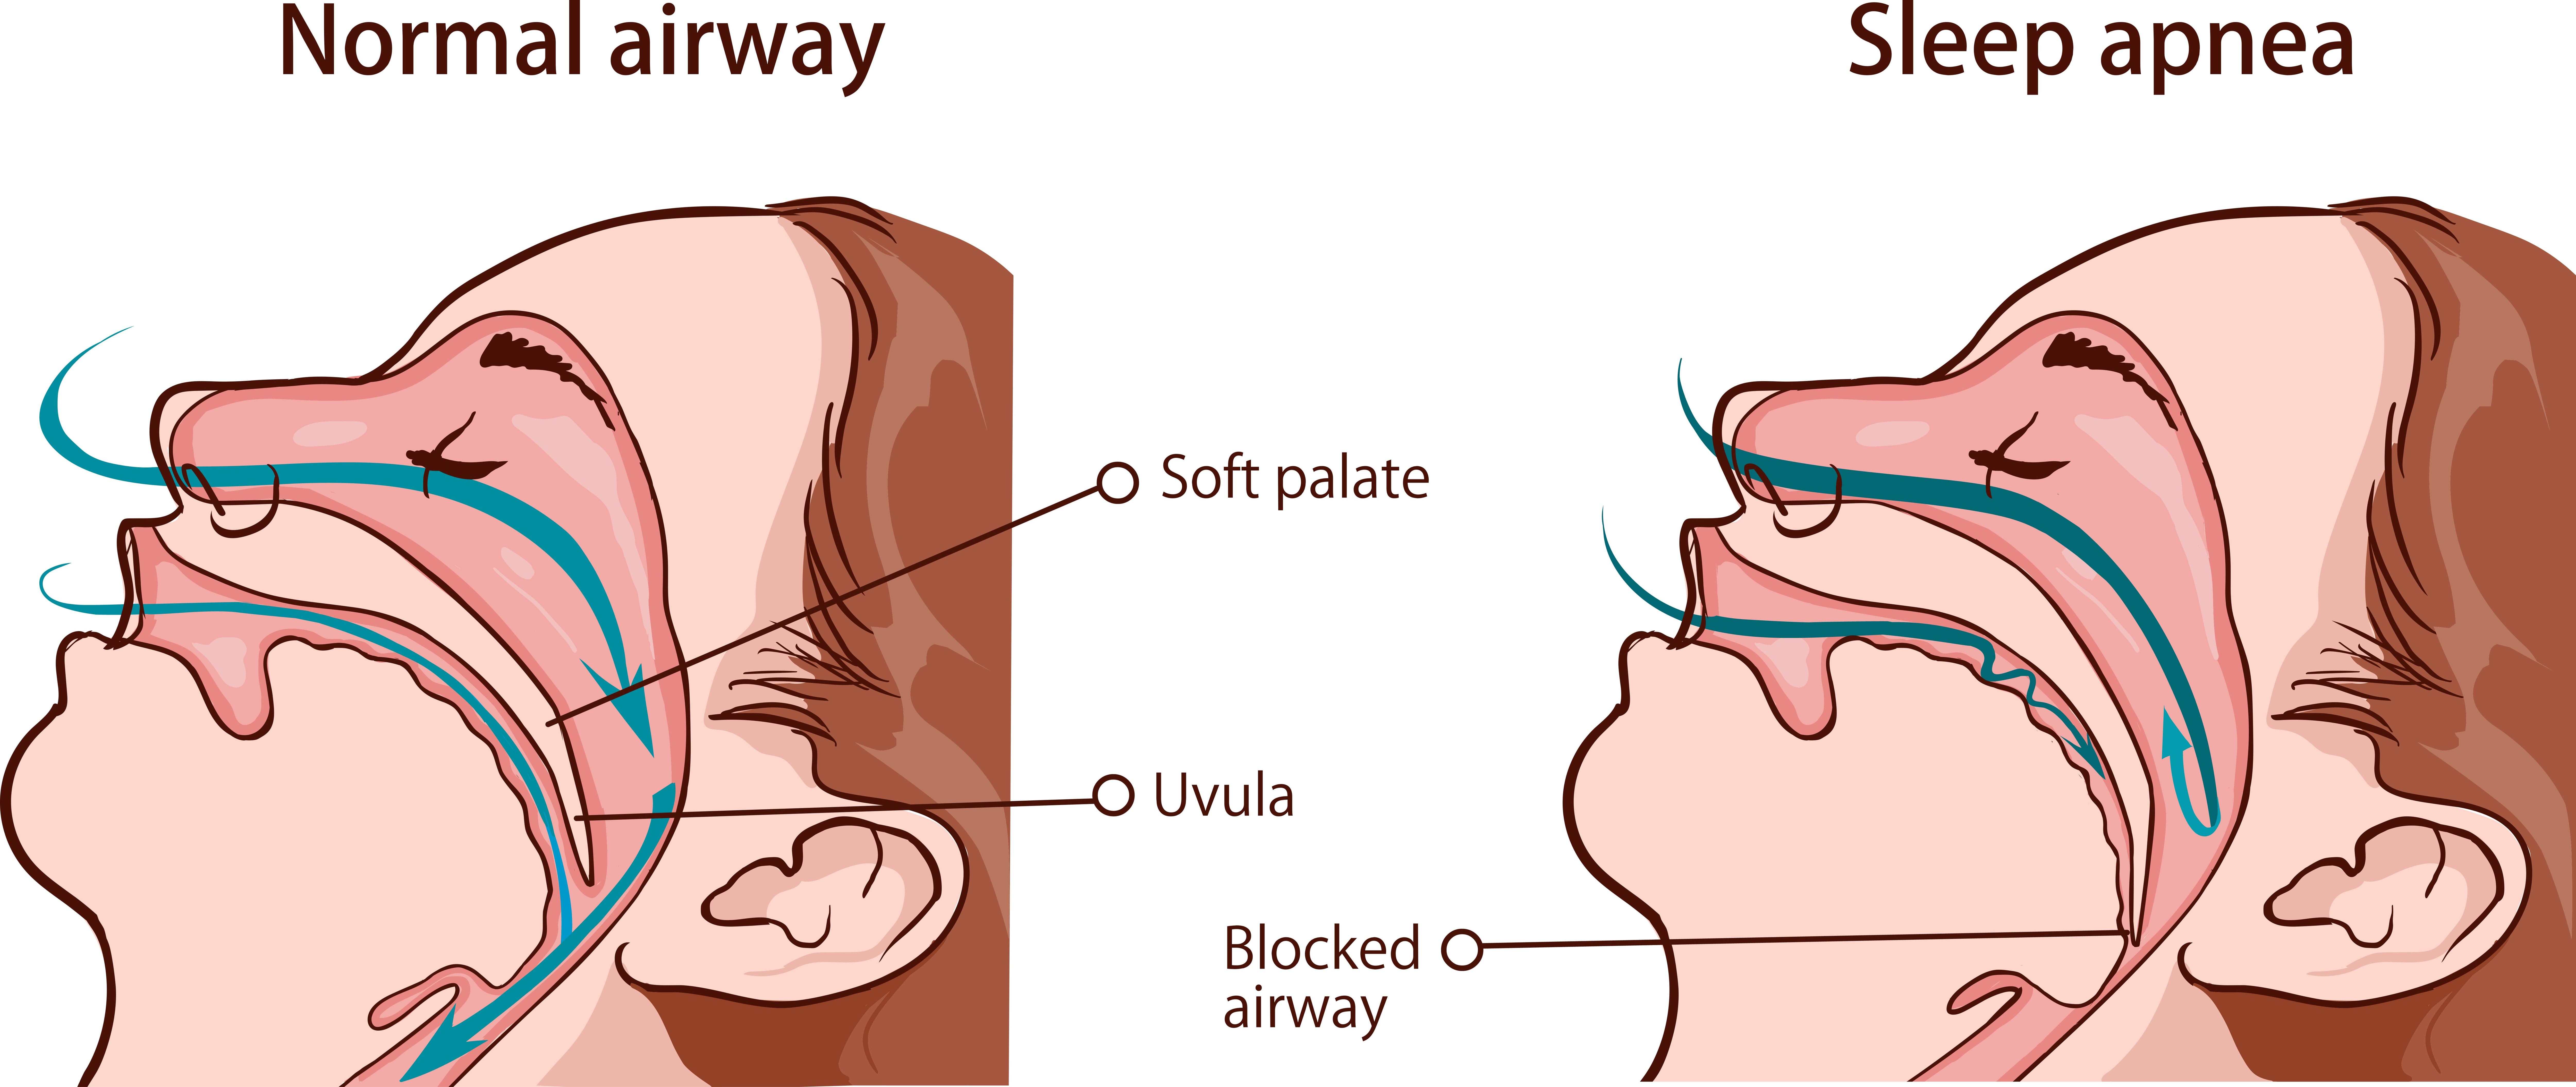 Sleep apnea versus normal airway.